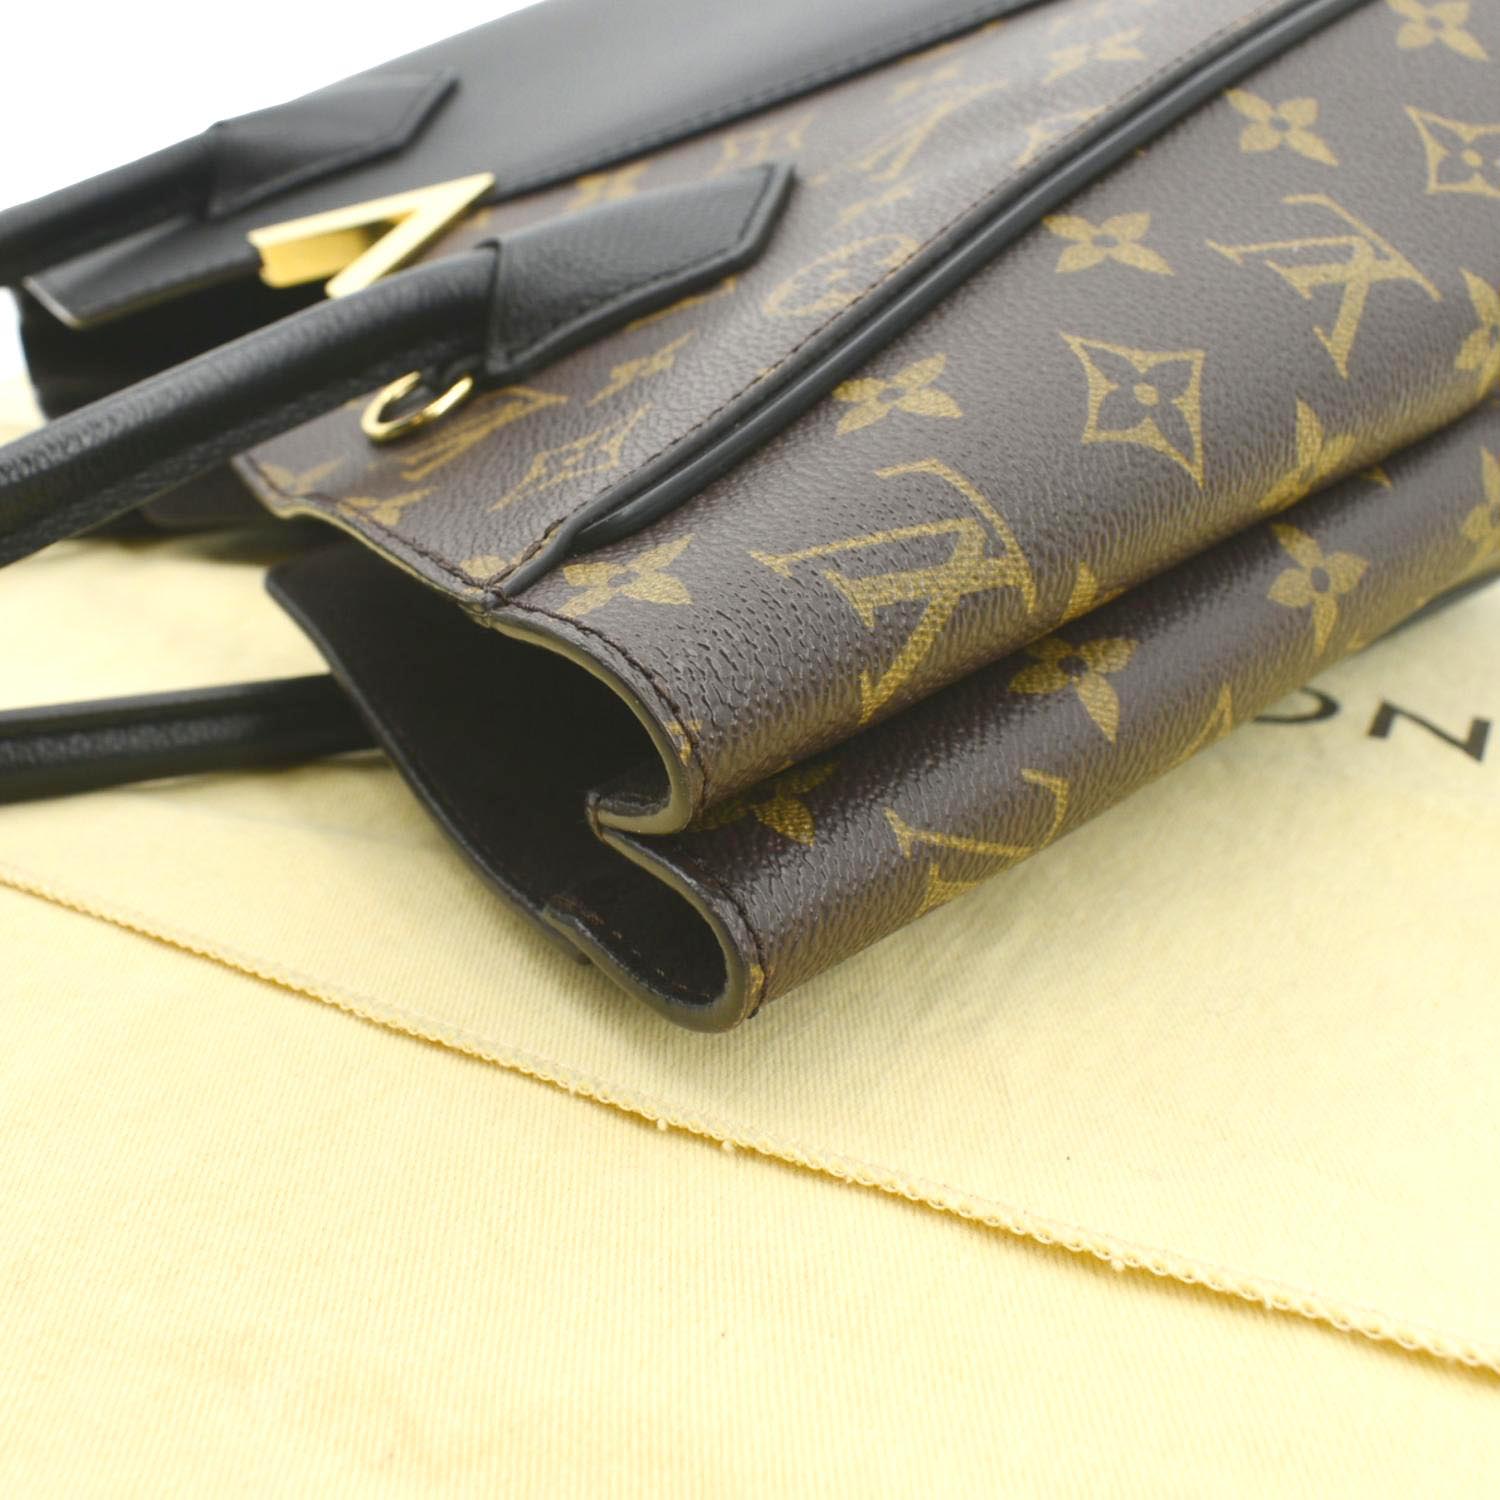 Kimono leather tote Louis Vuitton Multicolour in Leather - 31969345